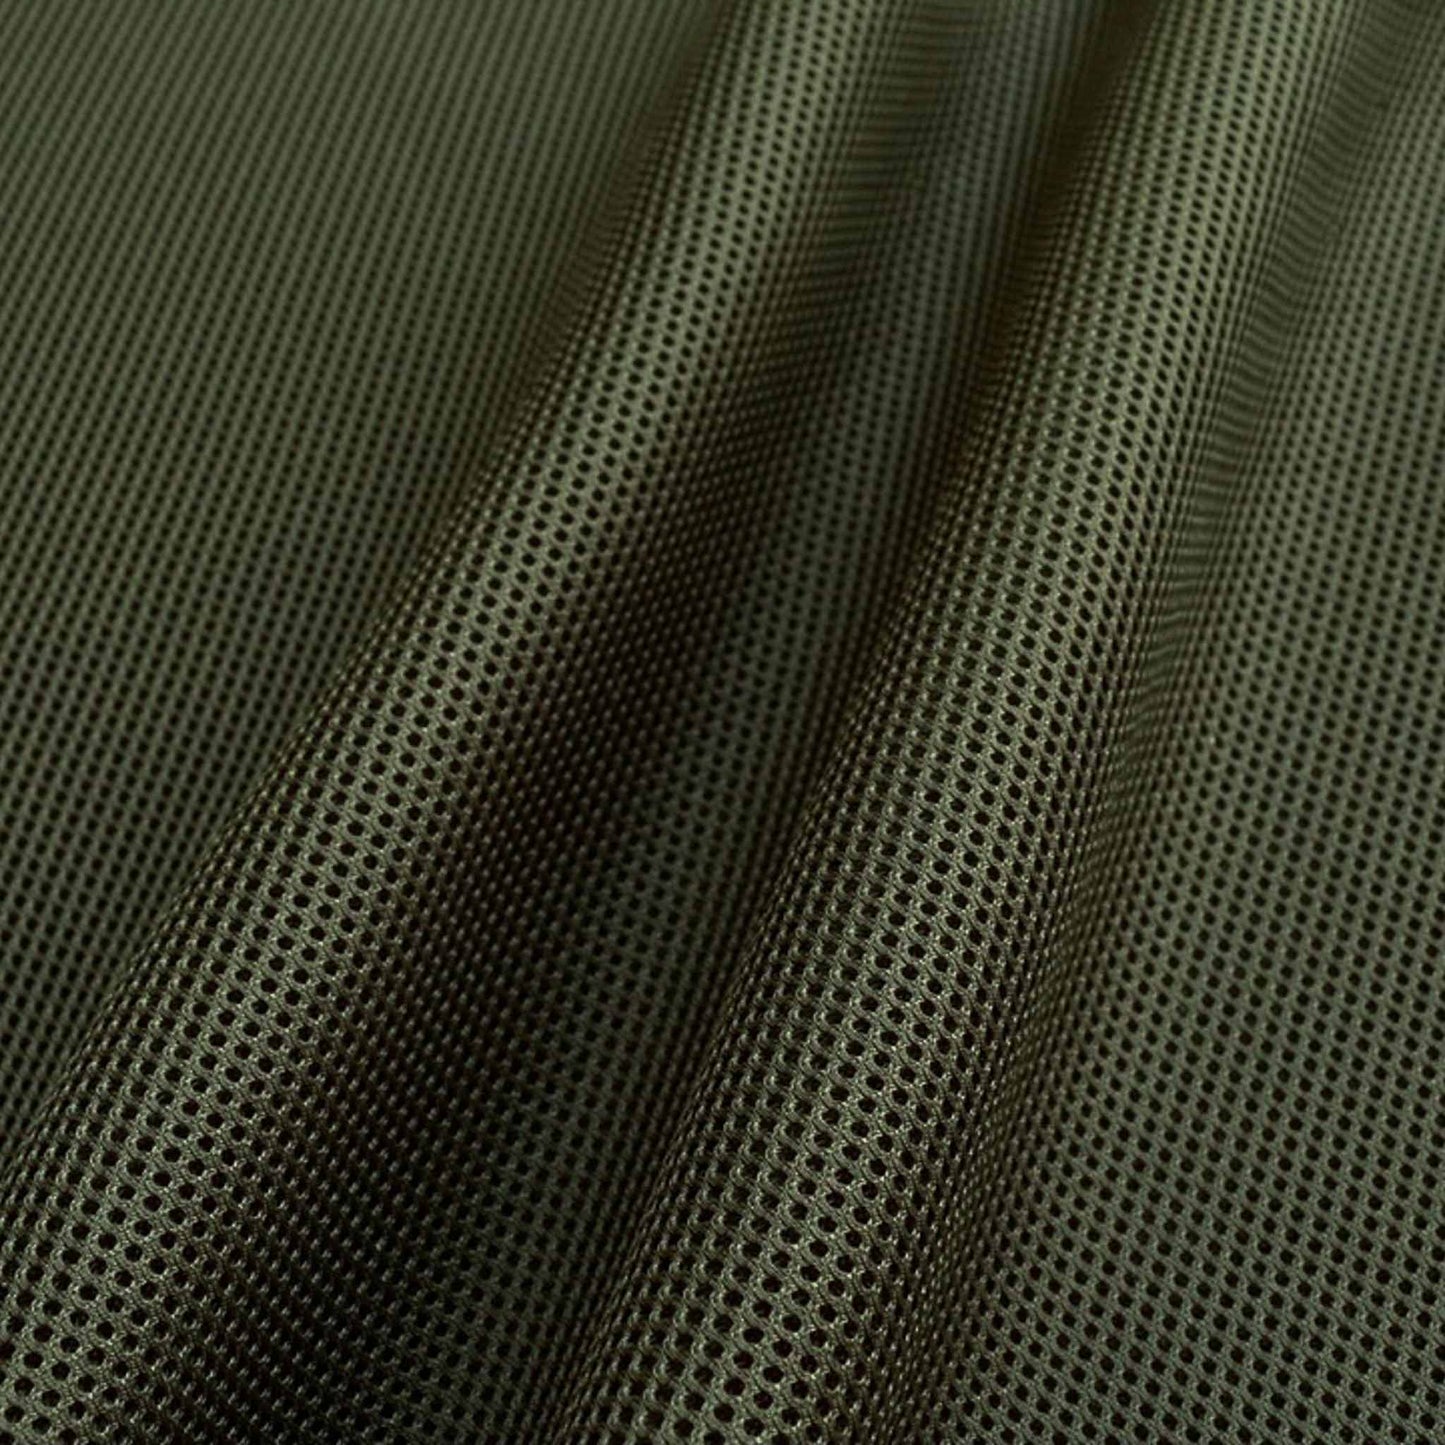 3D airtex spacer mesh sport fabric dressmaking in Khaki green